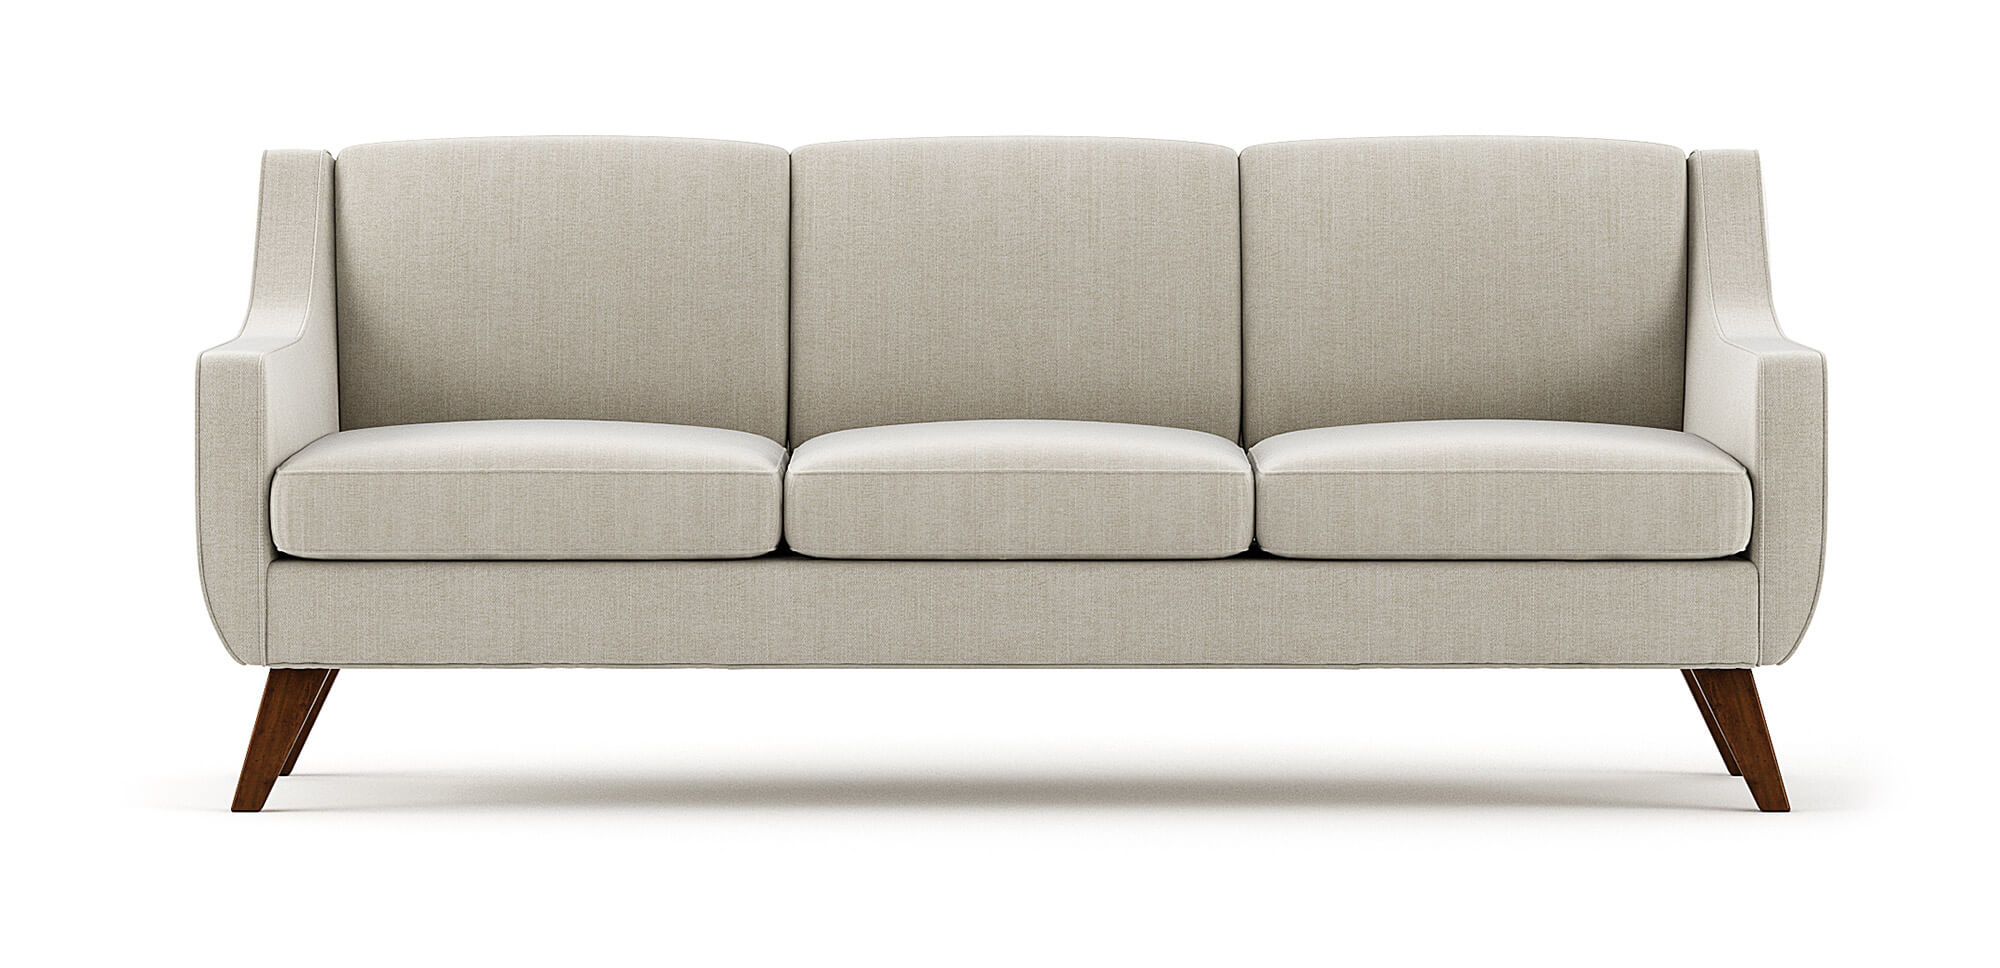 Modern Furniture Contemporary Furniture,